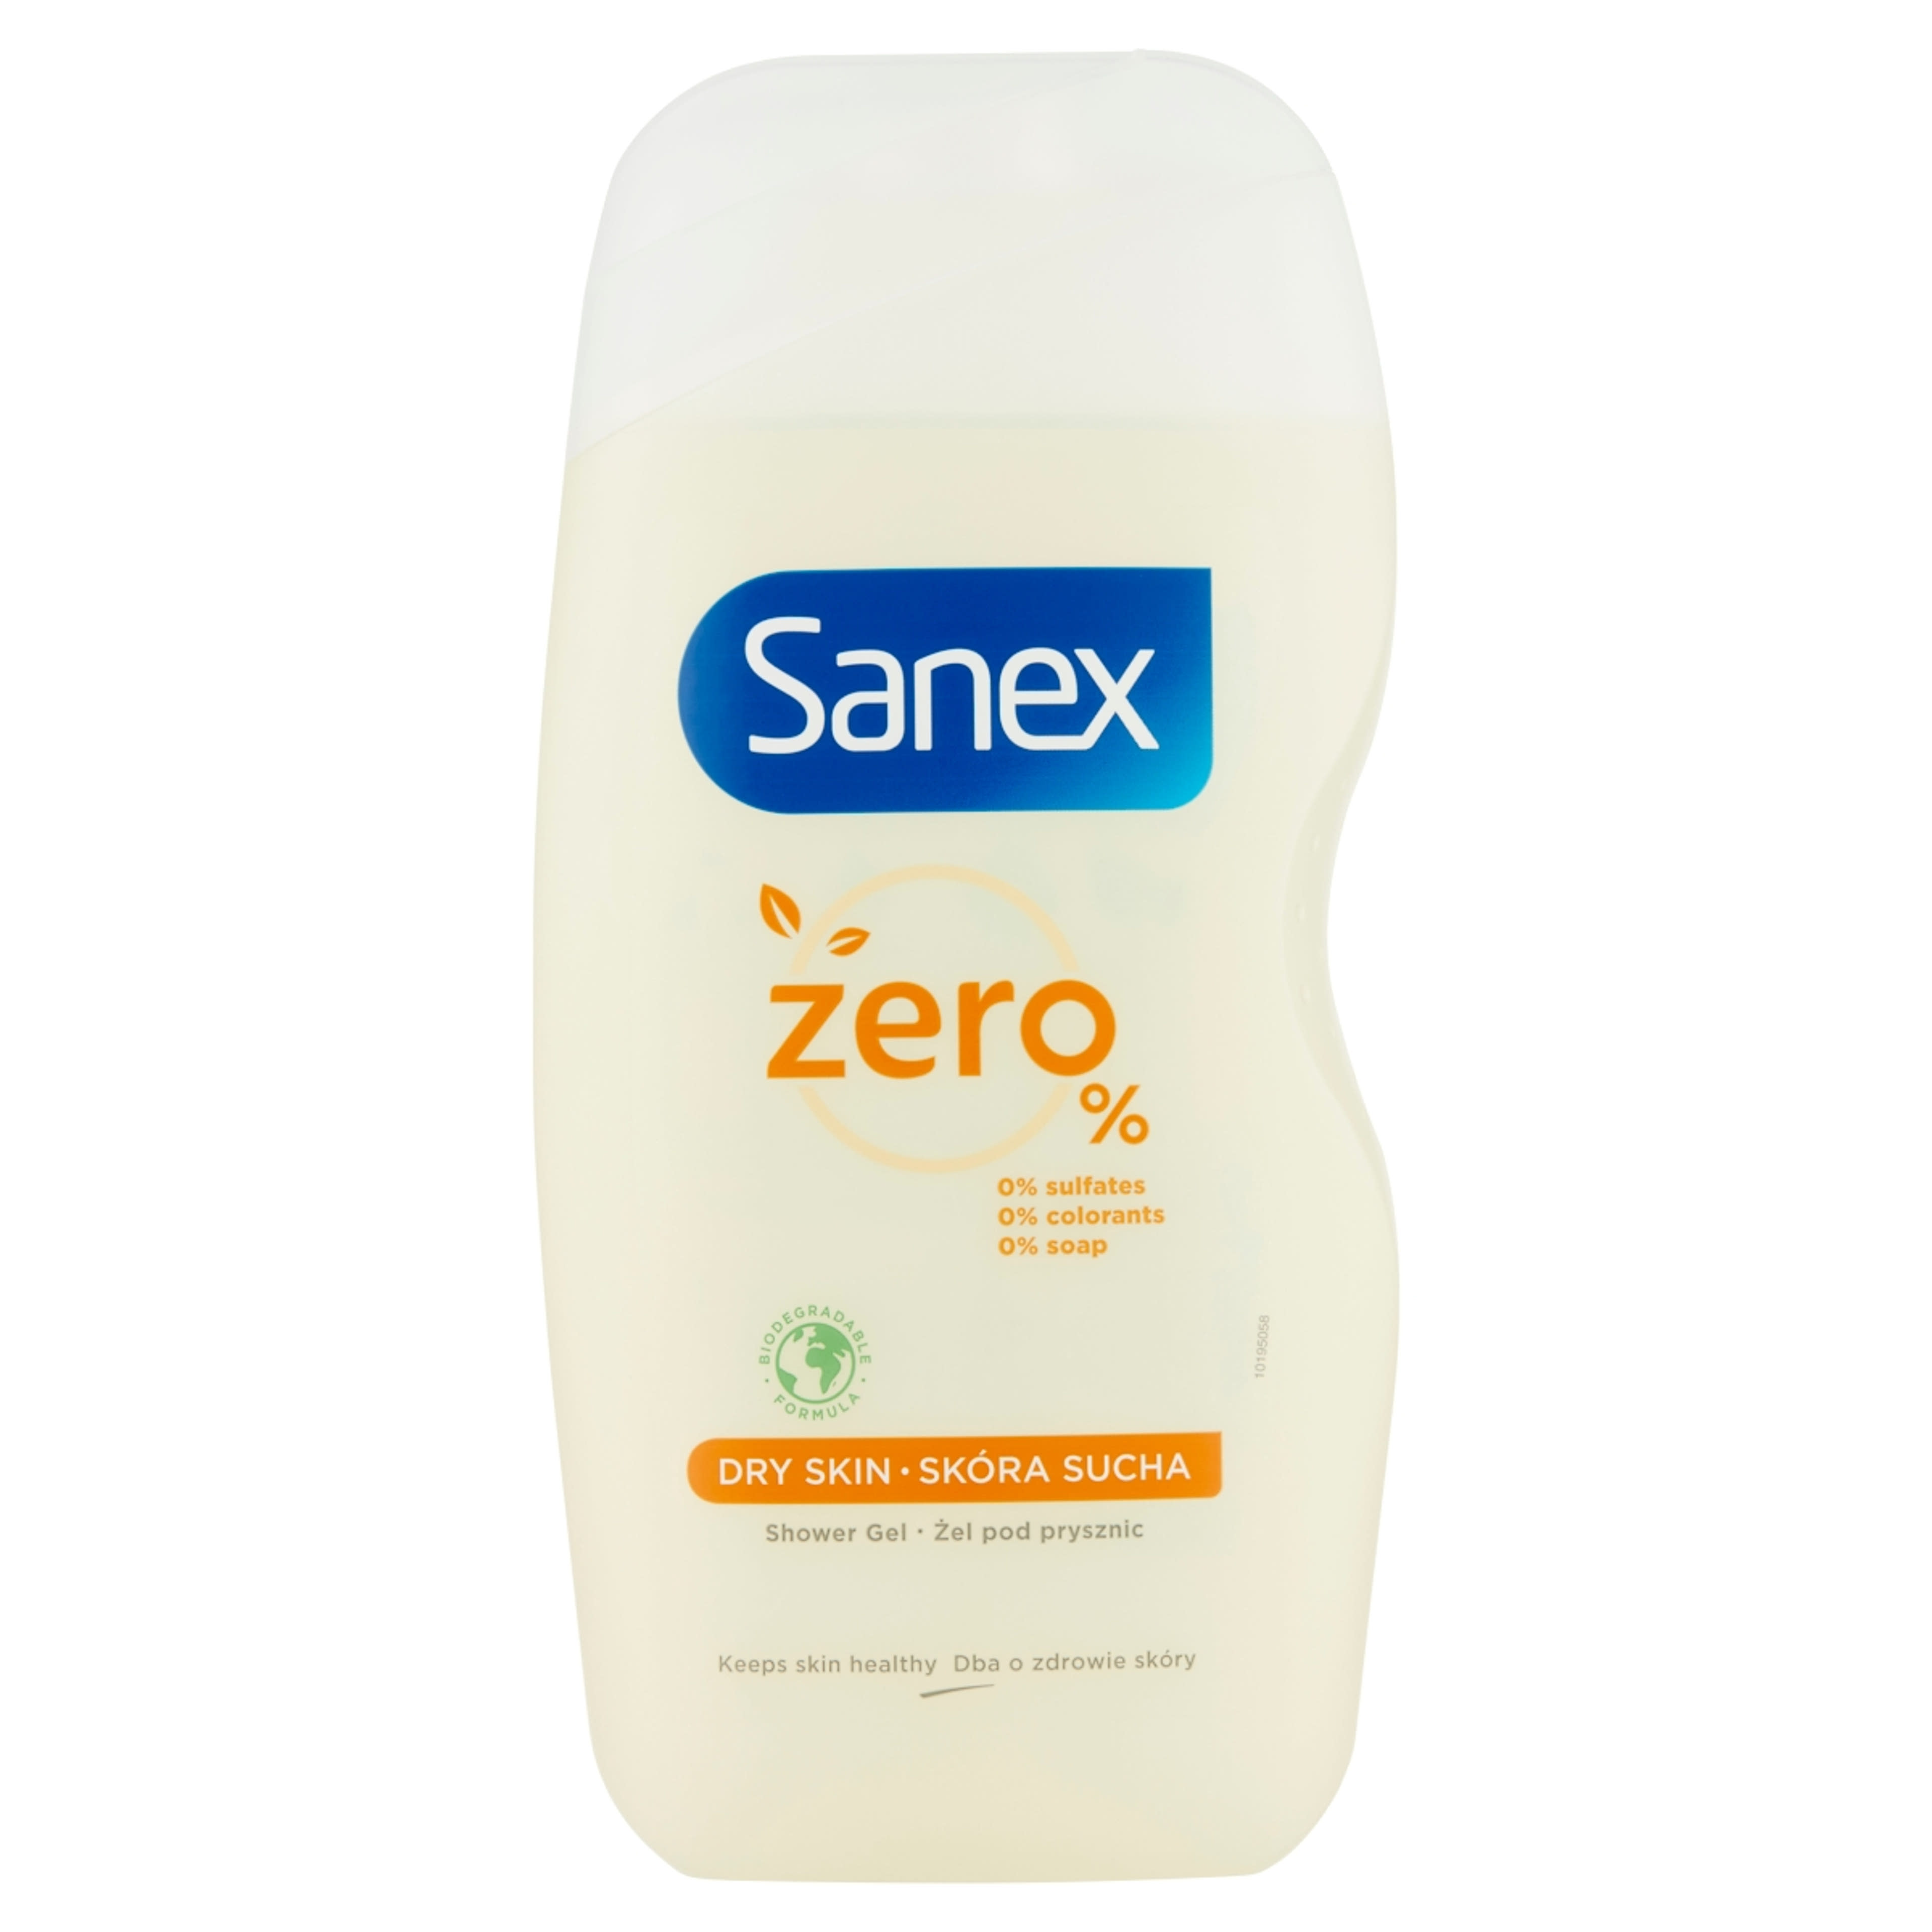 Sanex Zero% Dry Skin tusfürdő száraz bőrre - 500 ml-1